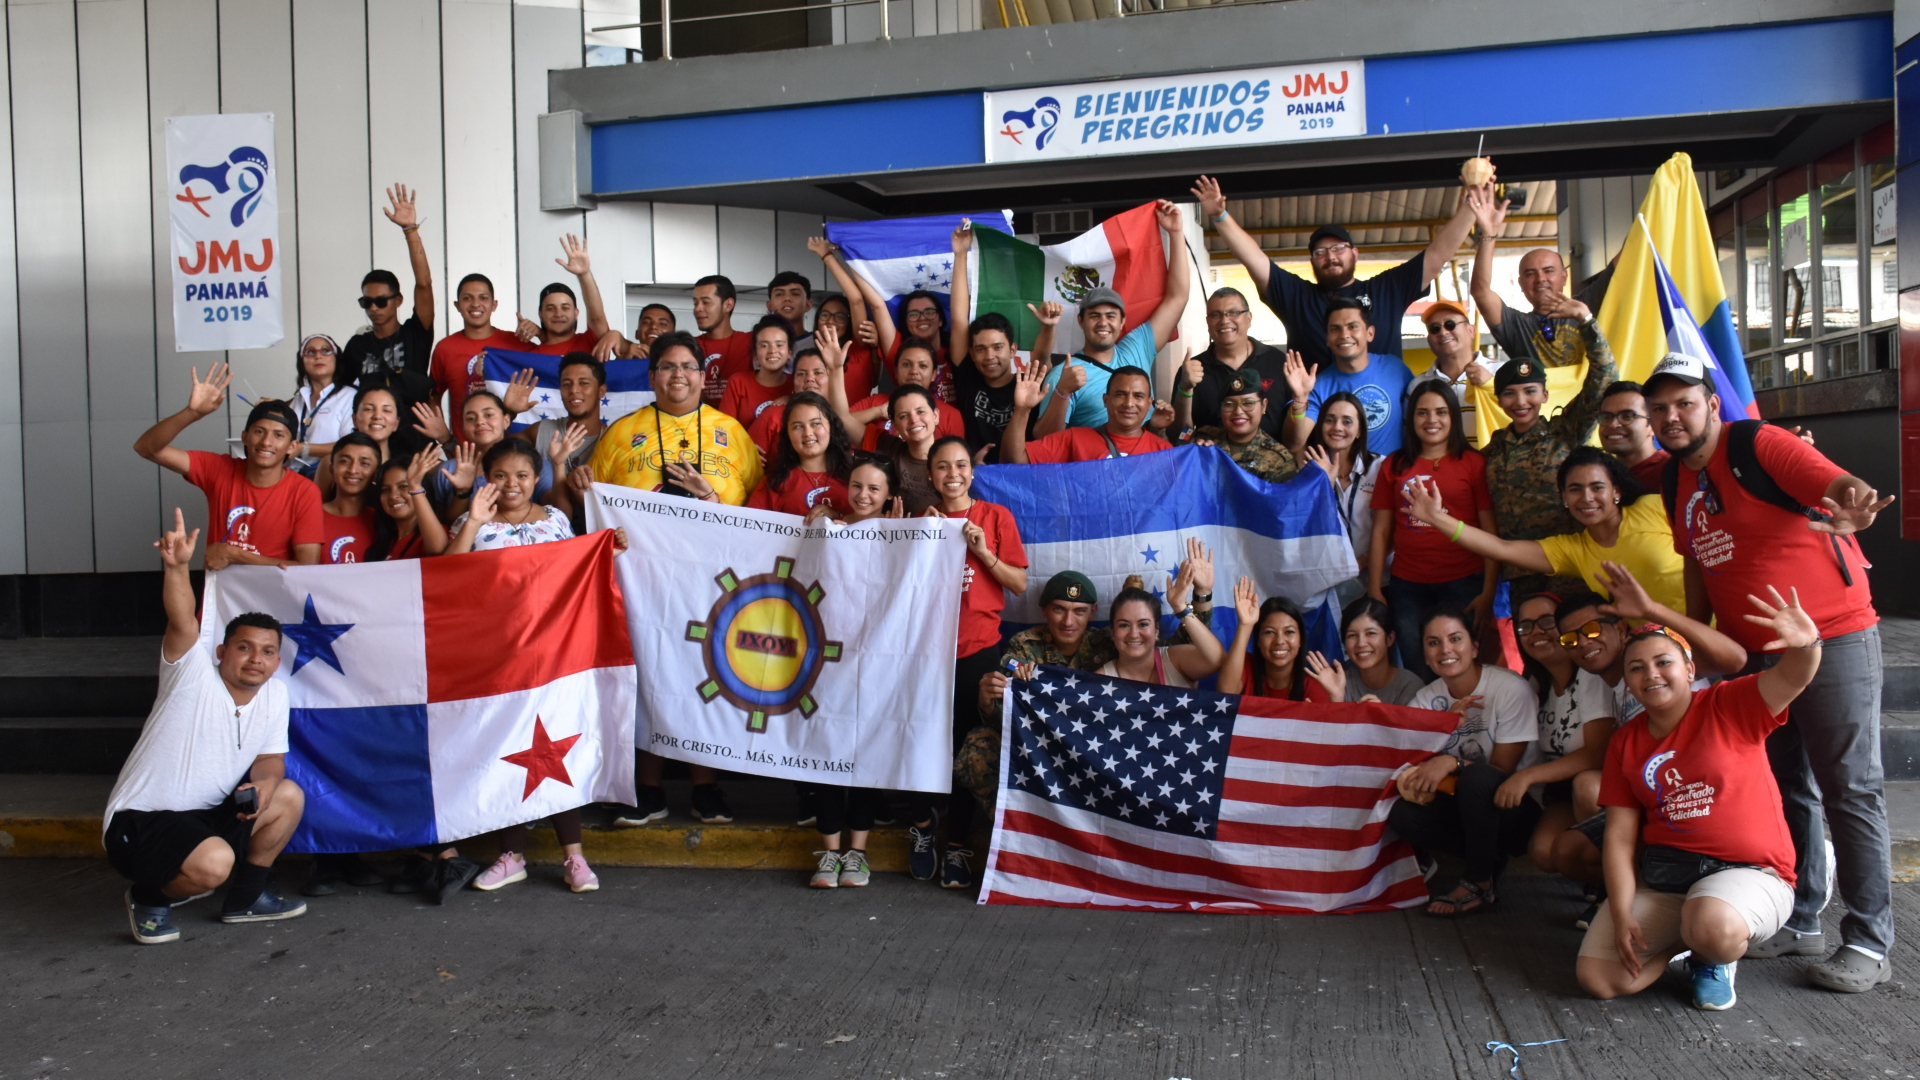 Jugendliche Pilgerer reisen zum Weltjugendtag in Panama an | Bildquelle: Marcelino Rosario/EPA-EFE/REX